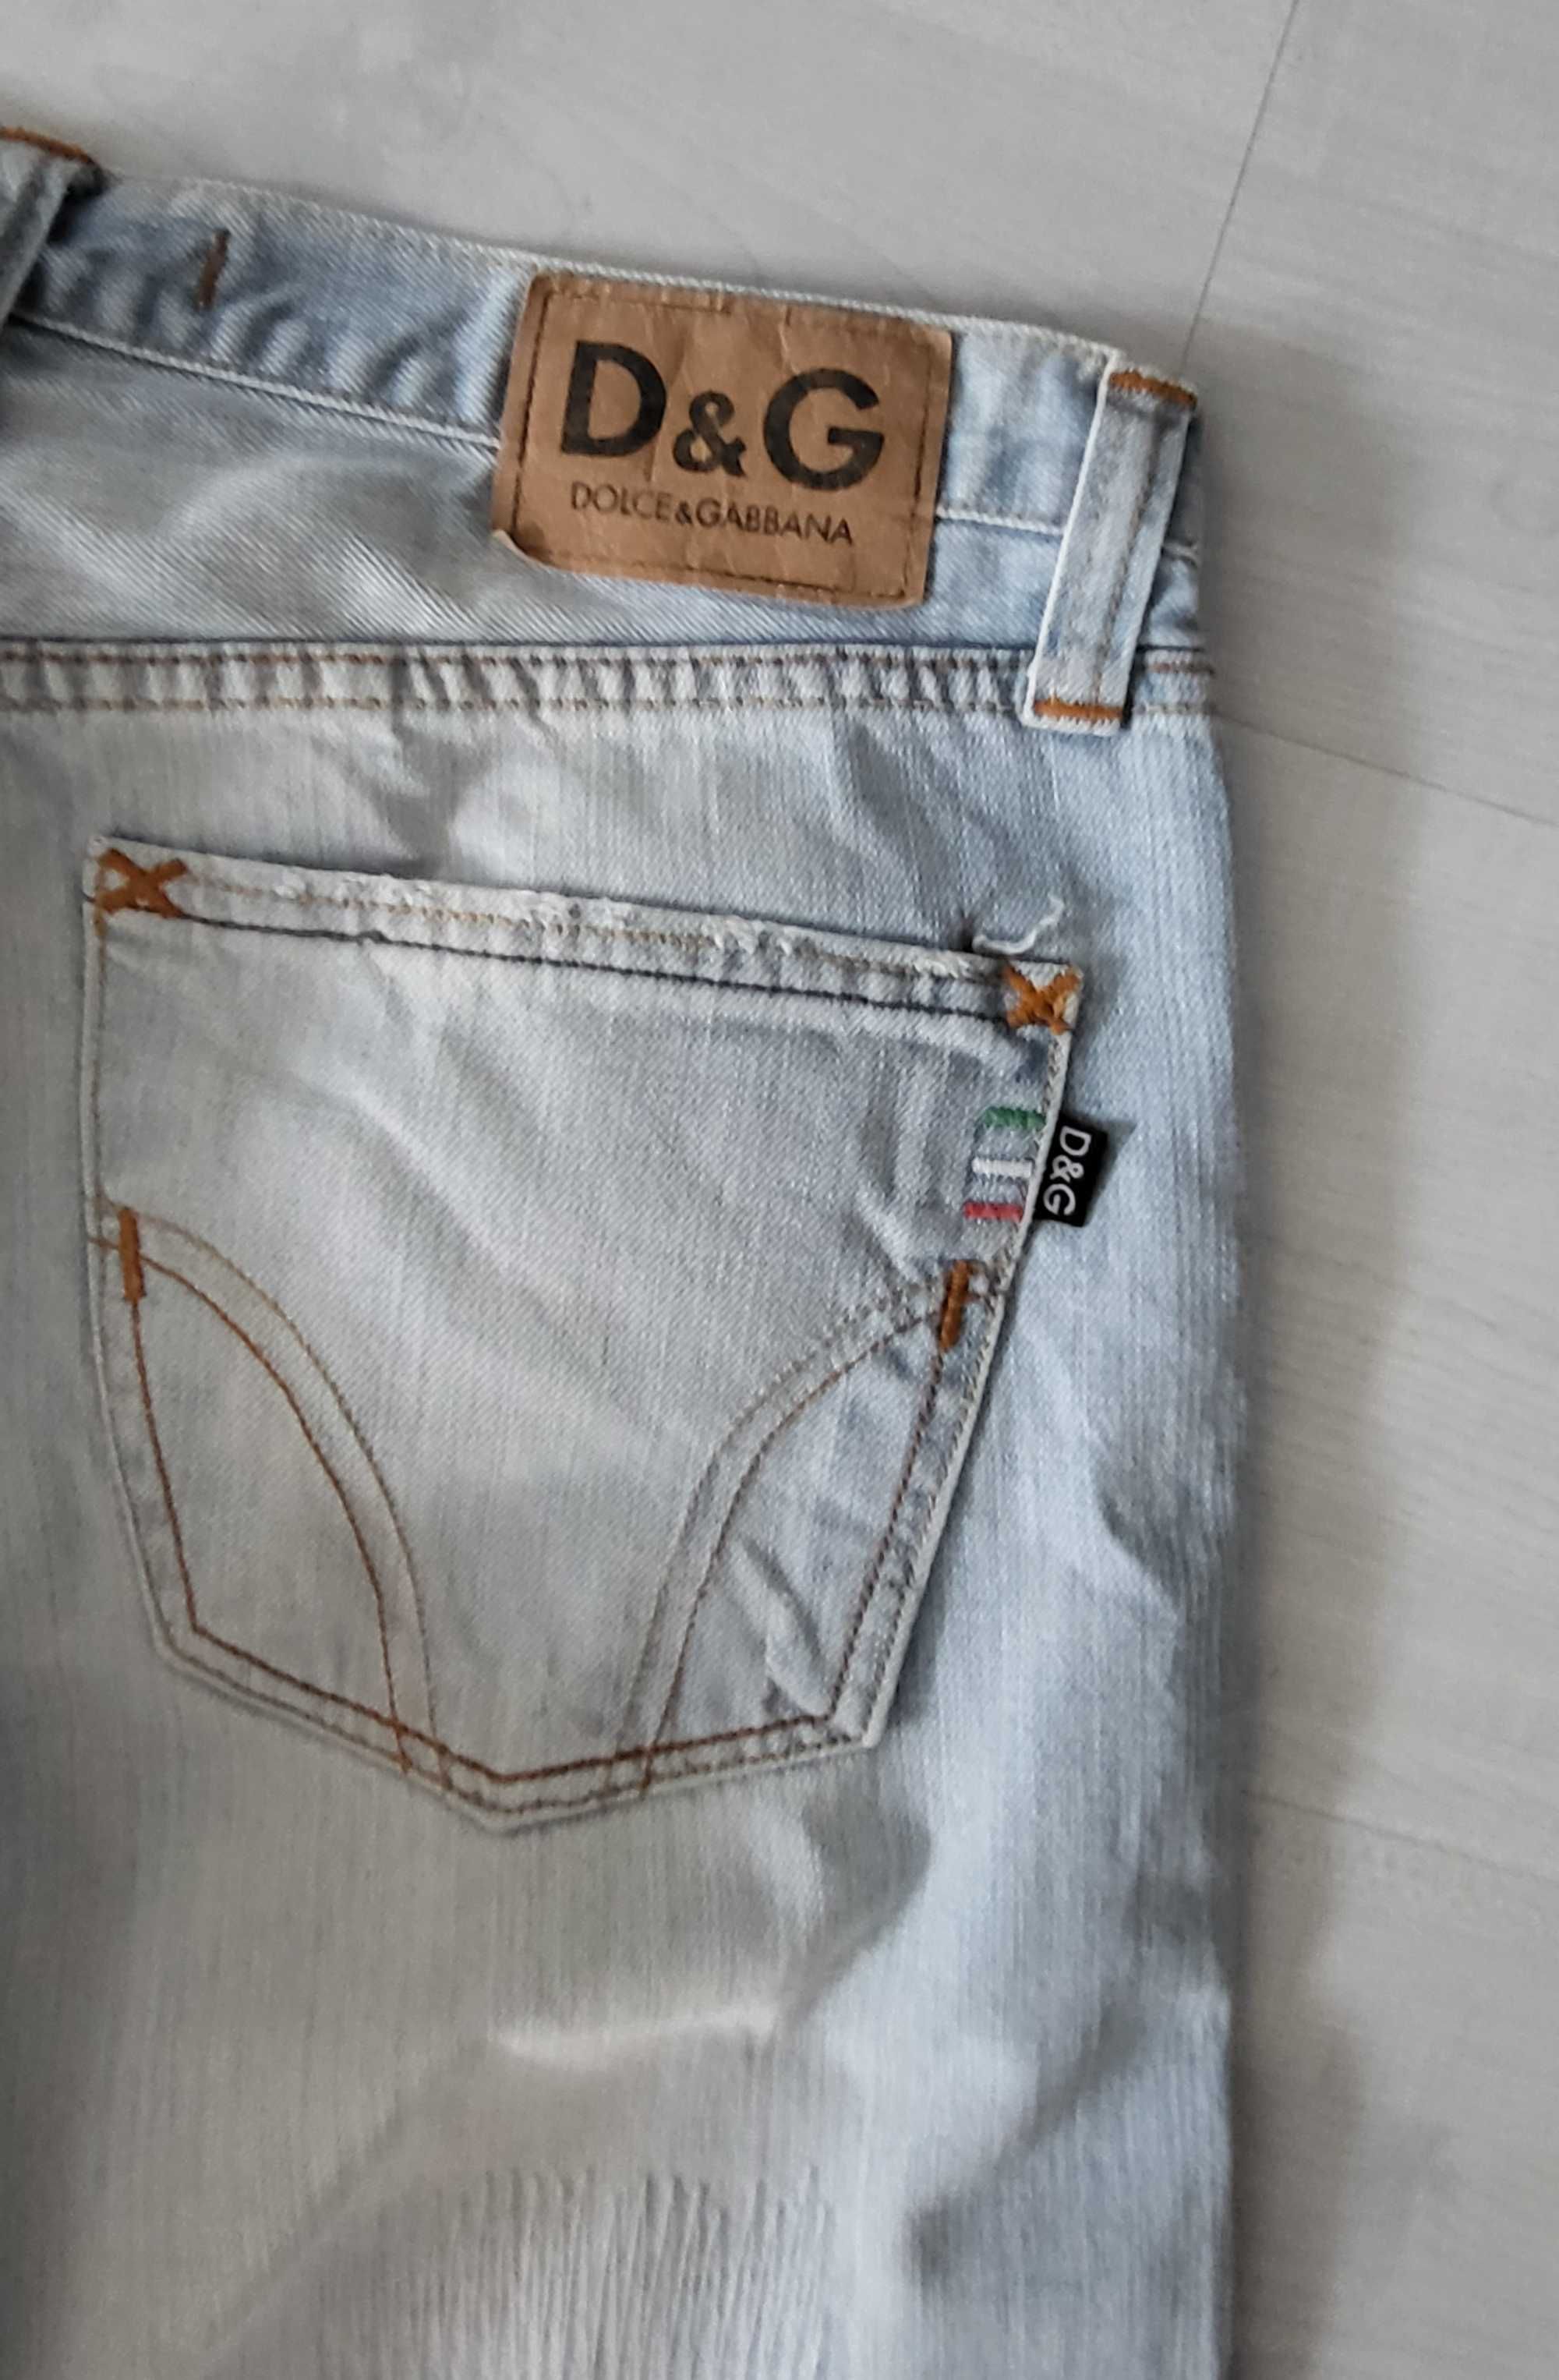 D&G spodenki jeansowe męskie roz XL 36